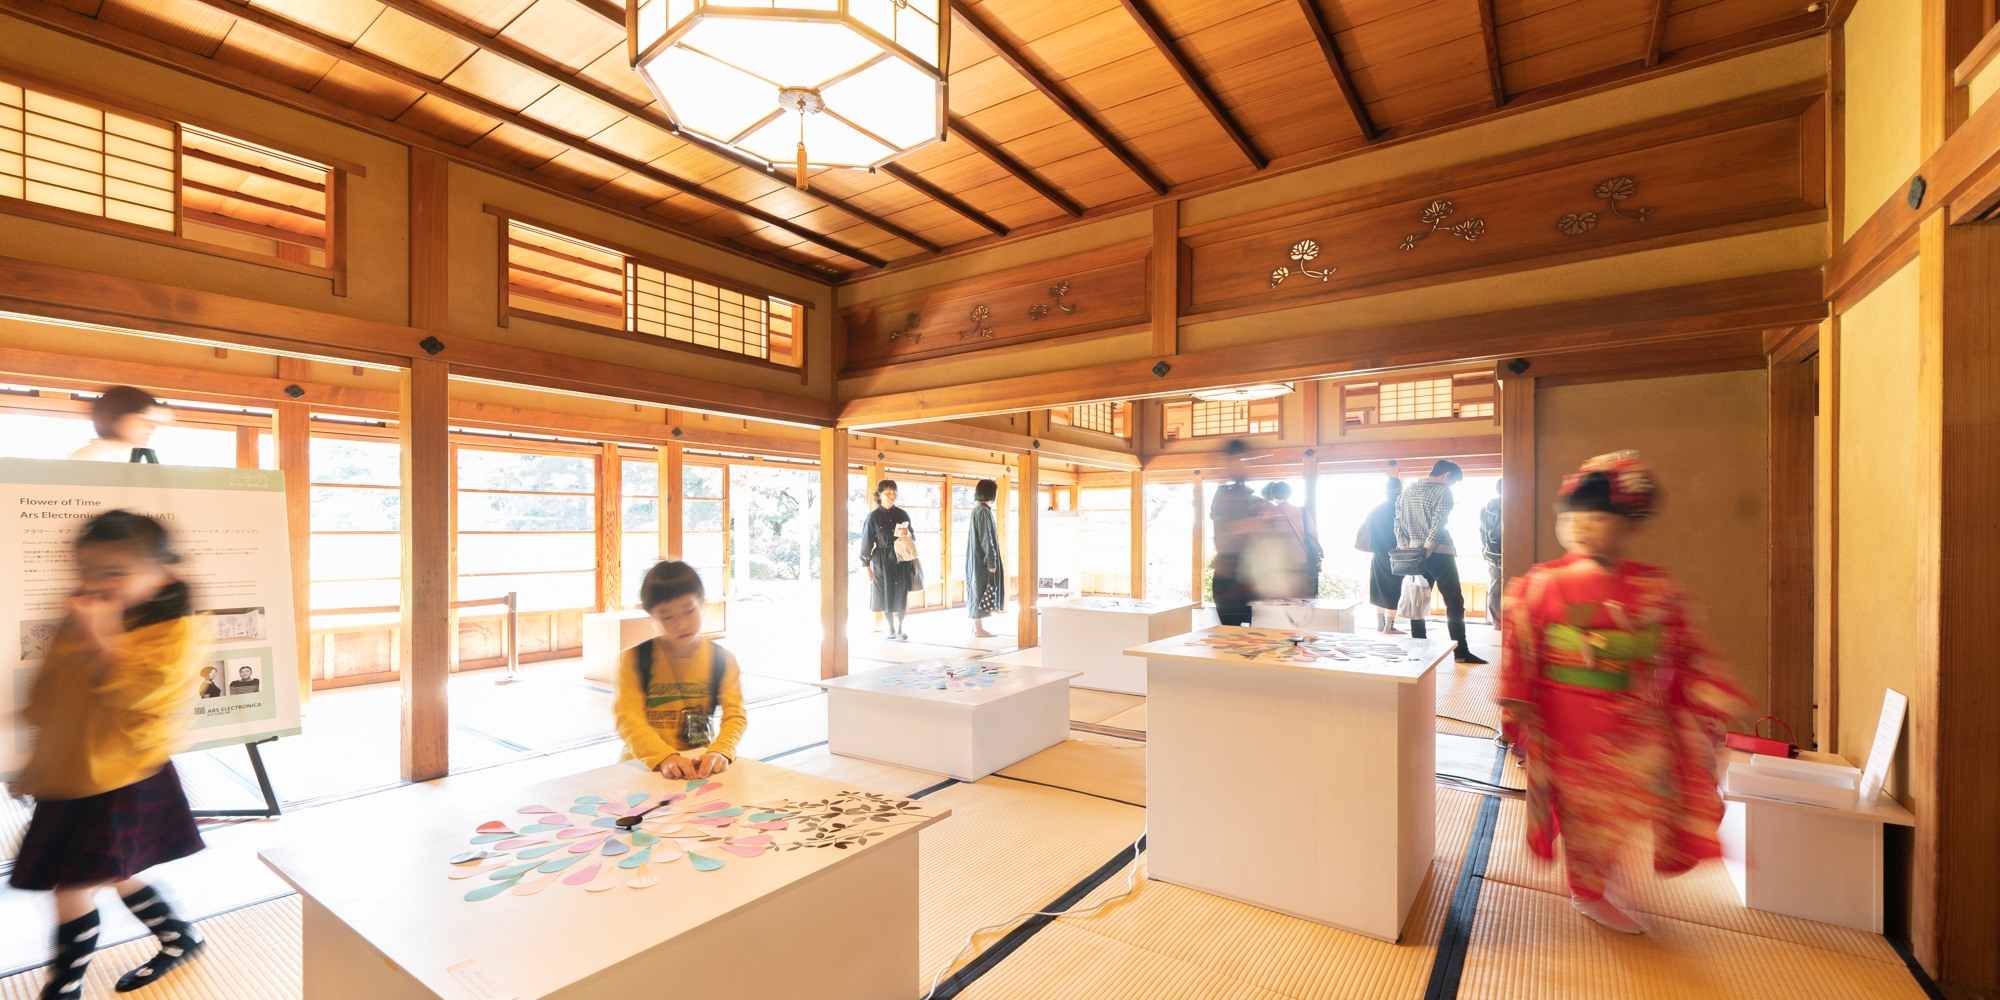 Matsudo International Science Art Festival: Exhibition